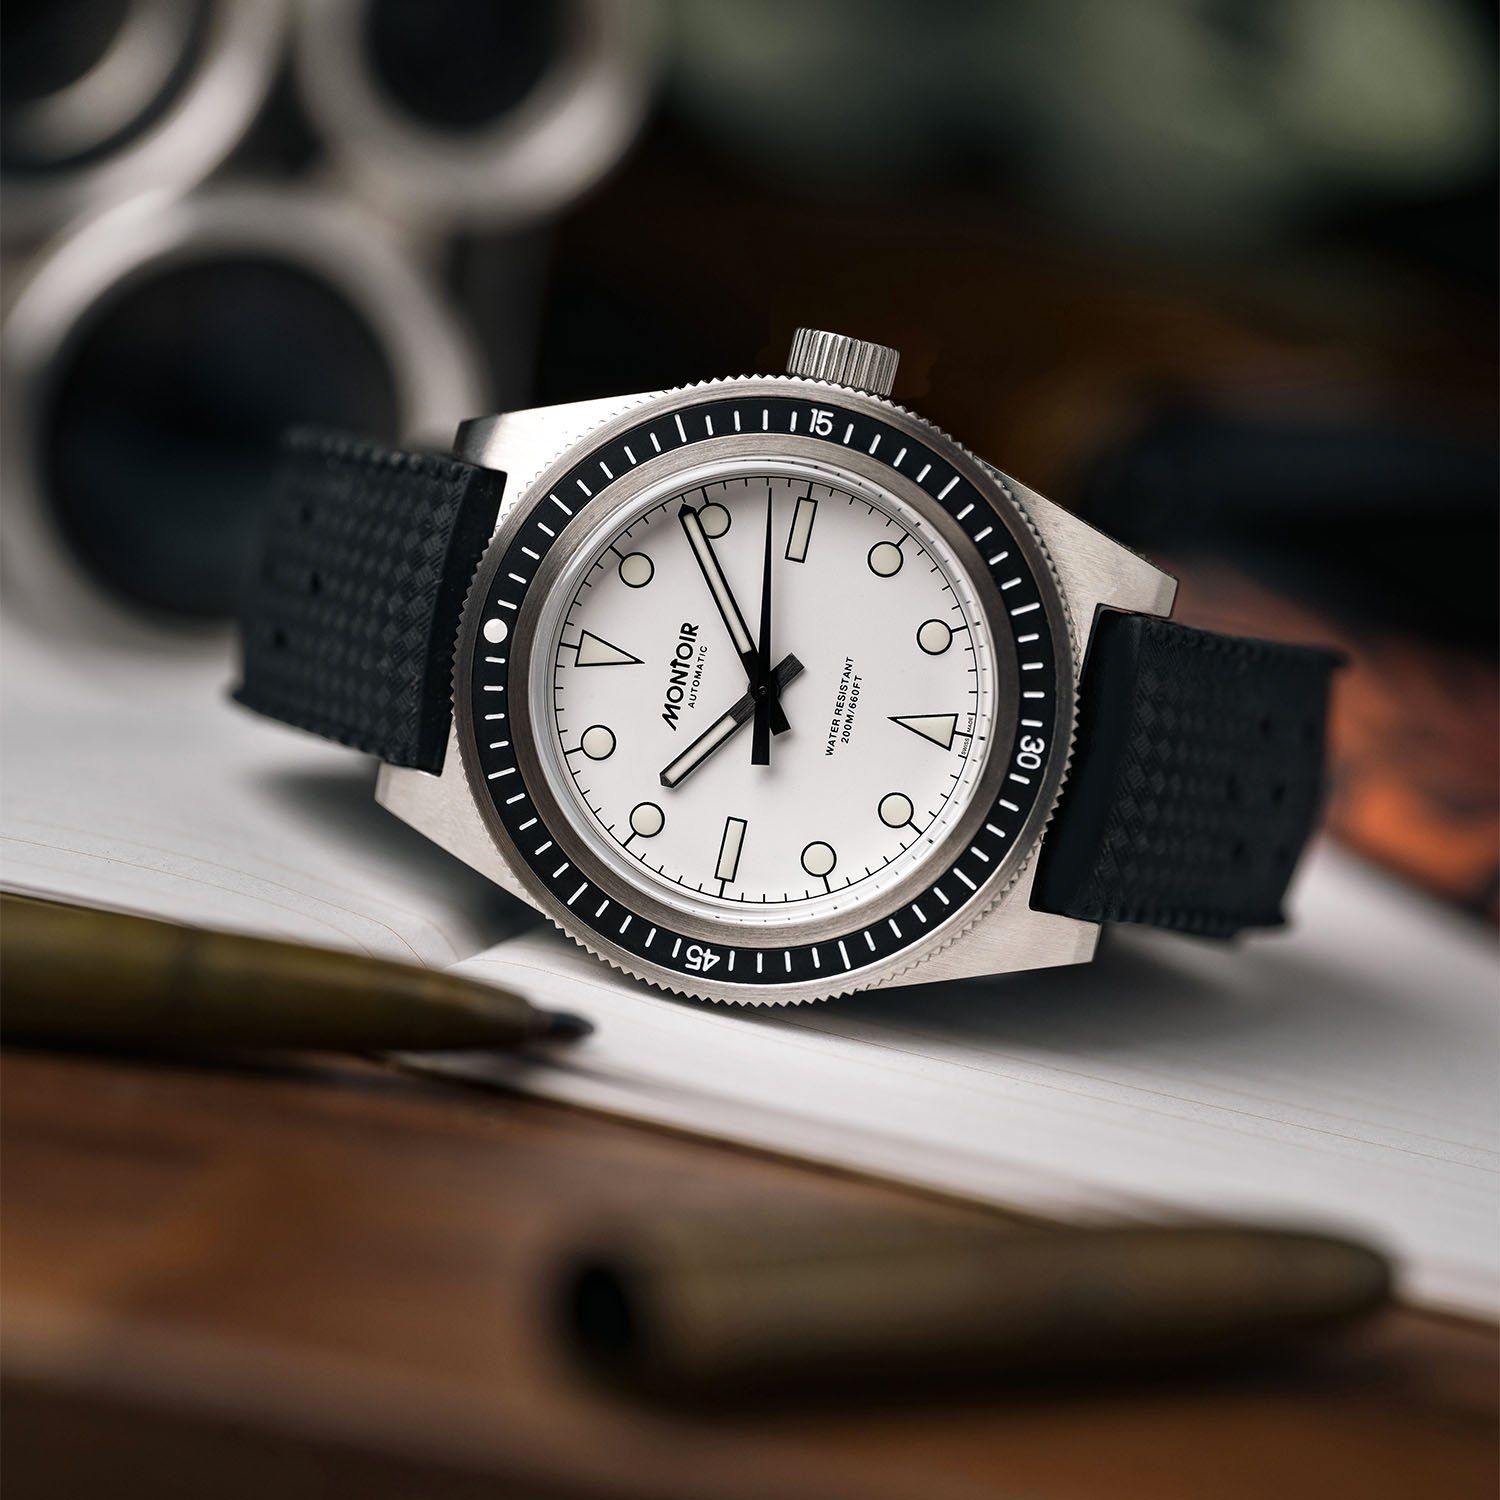 Представляем доступные часы для дайвинга Montoir Skin-Diver